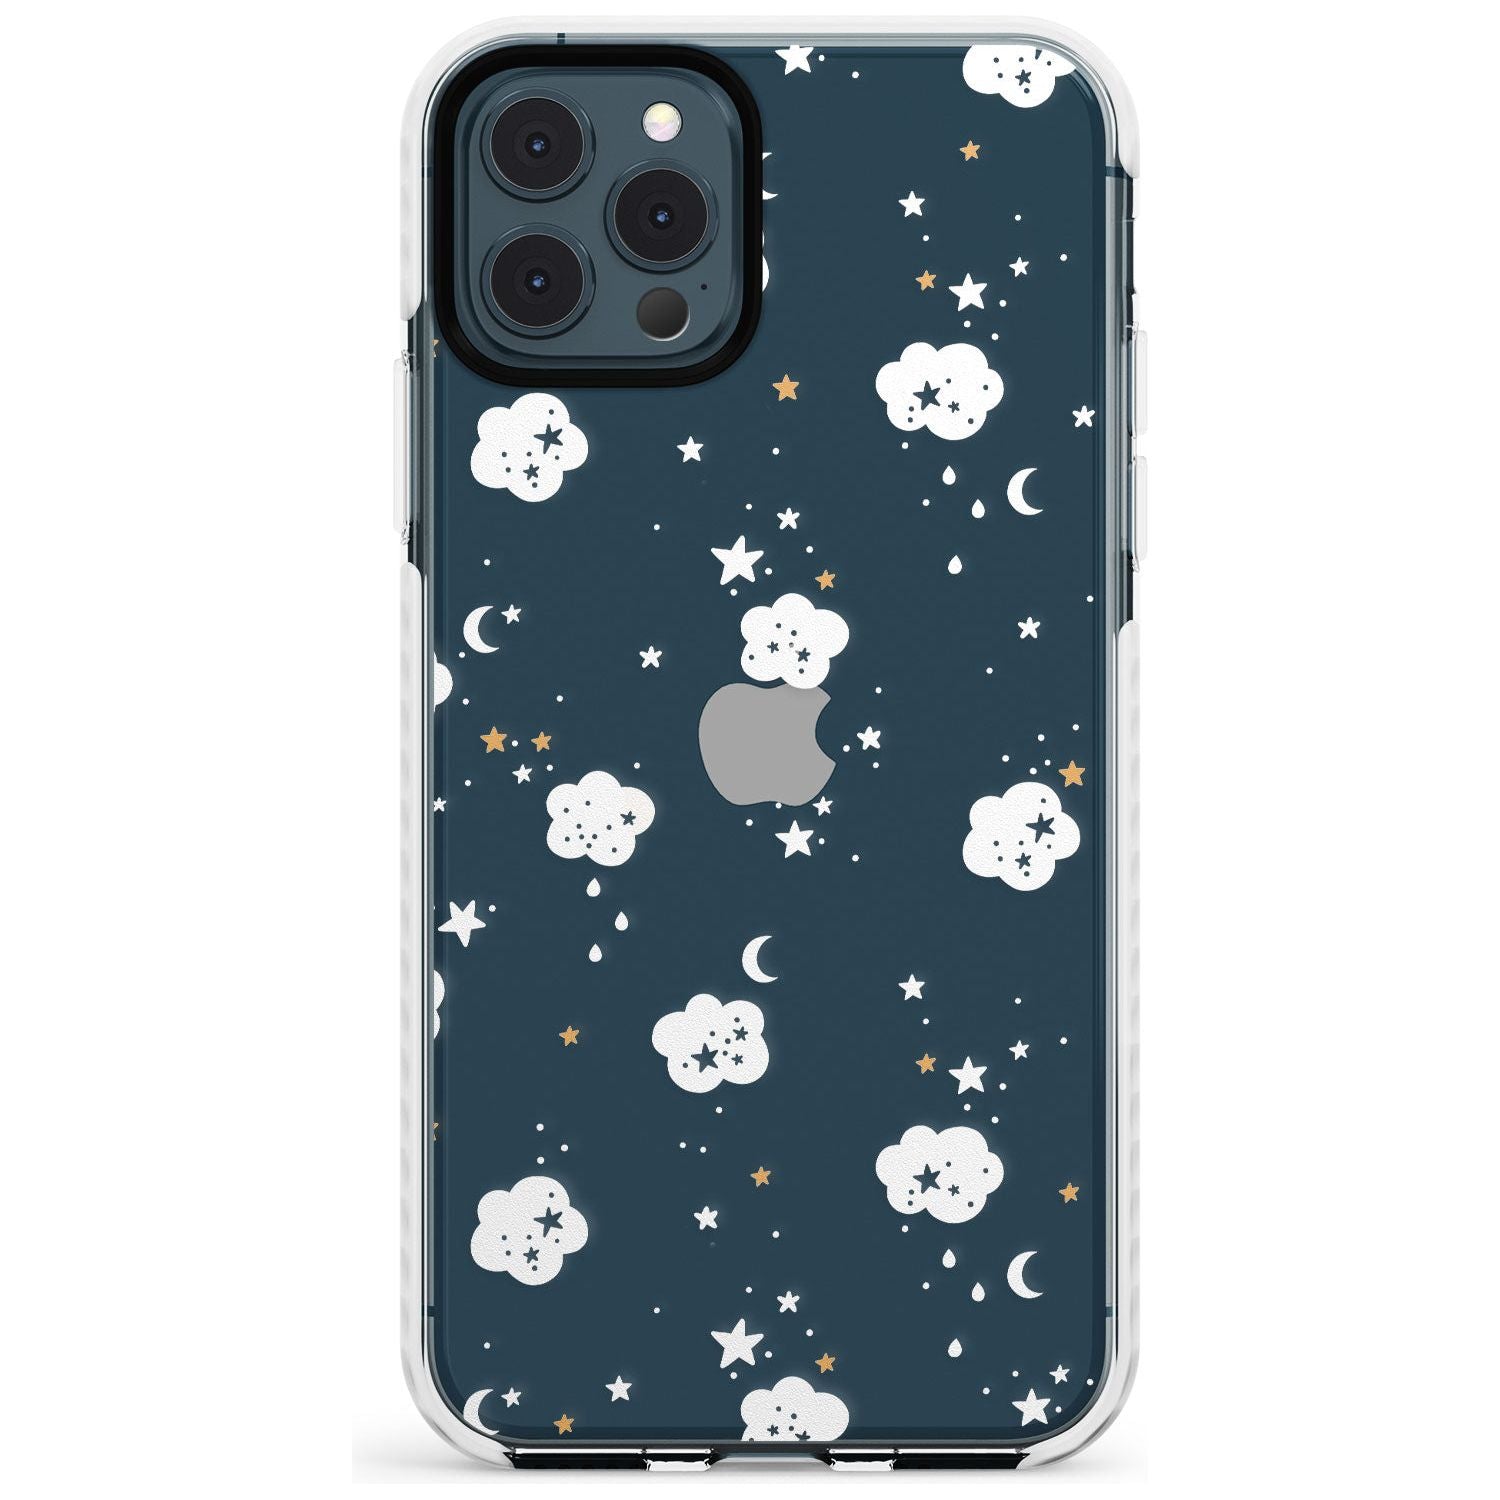 Stars & Clouds Slim TPU Phone Case for iPhone 11 Pro Max